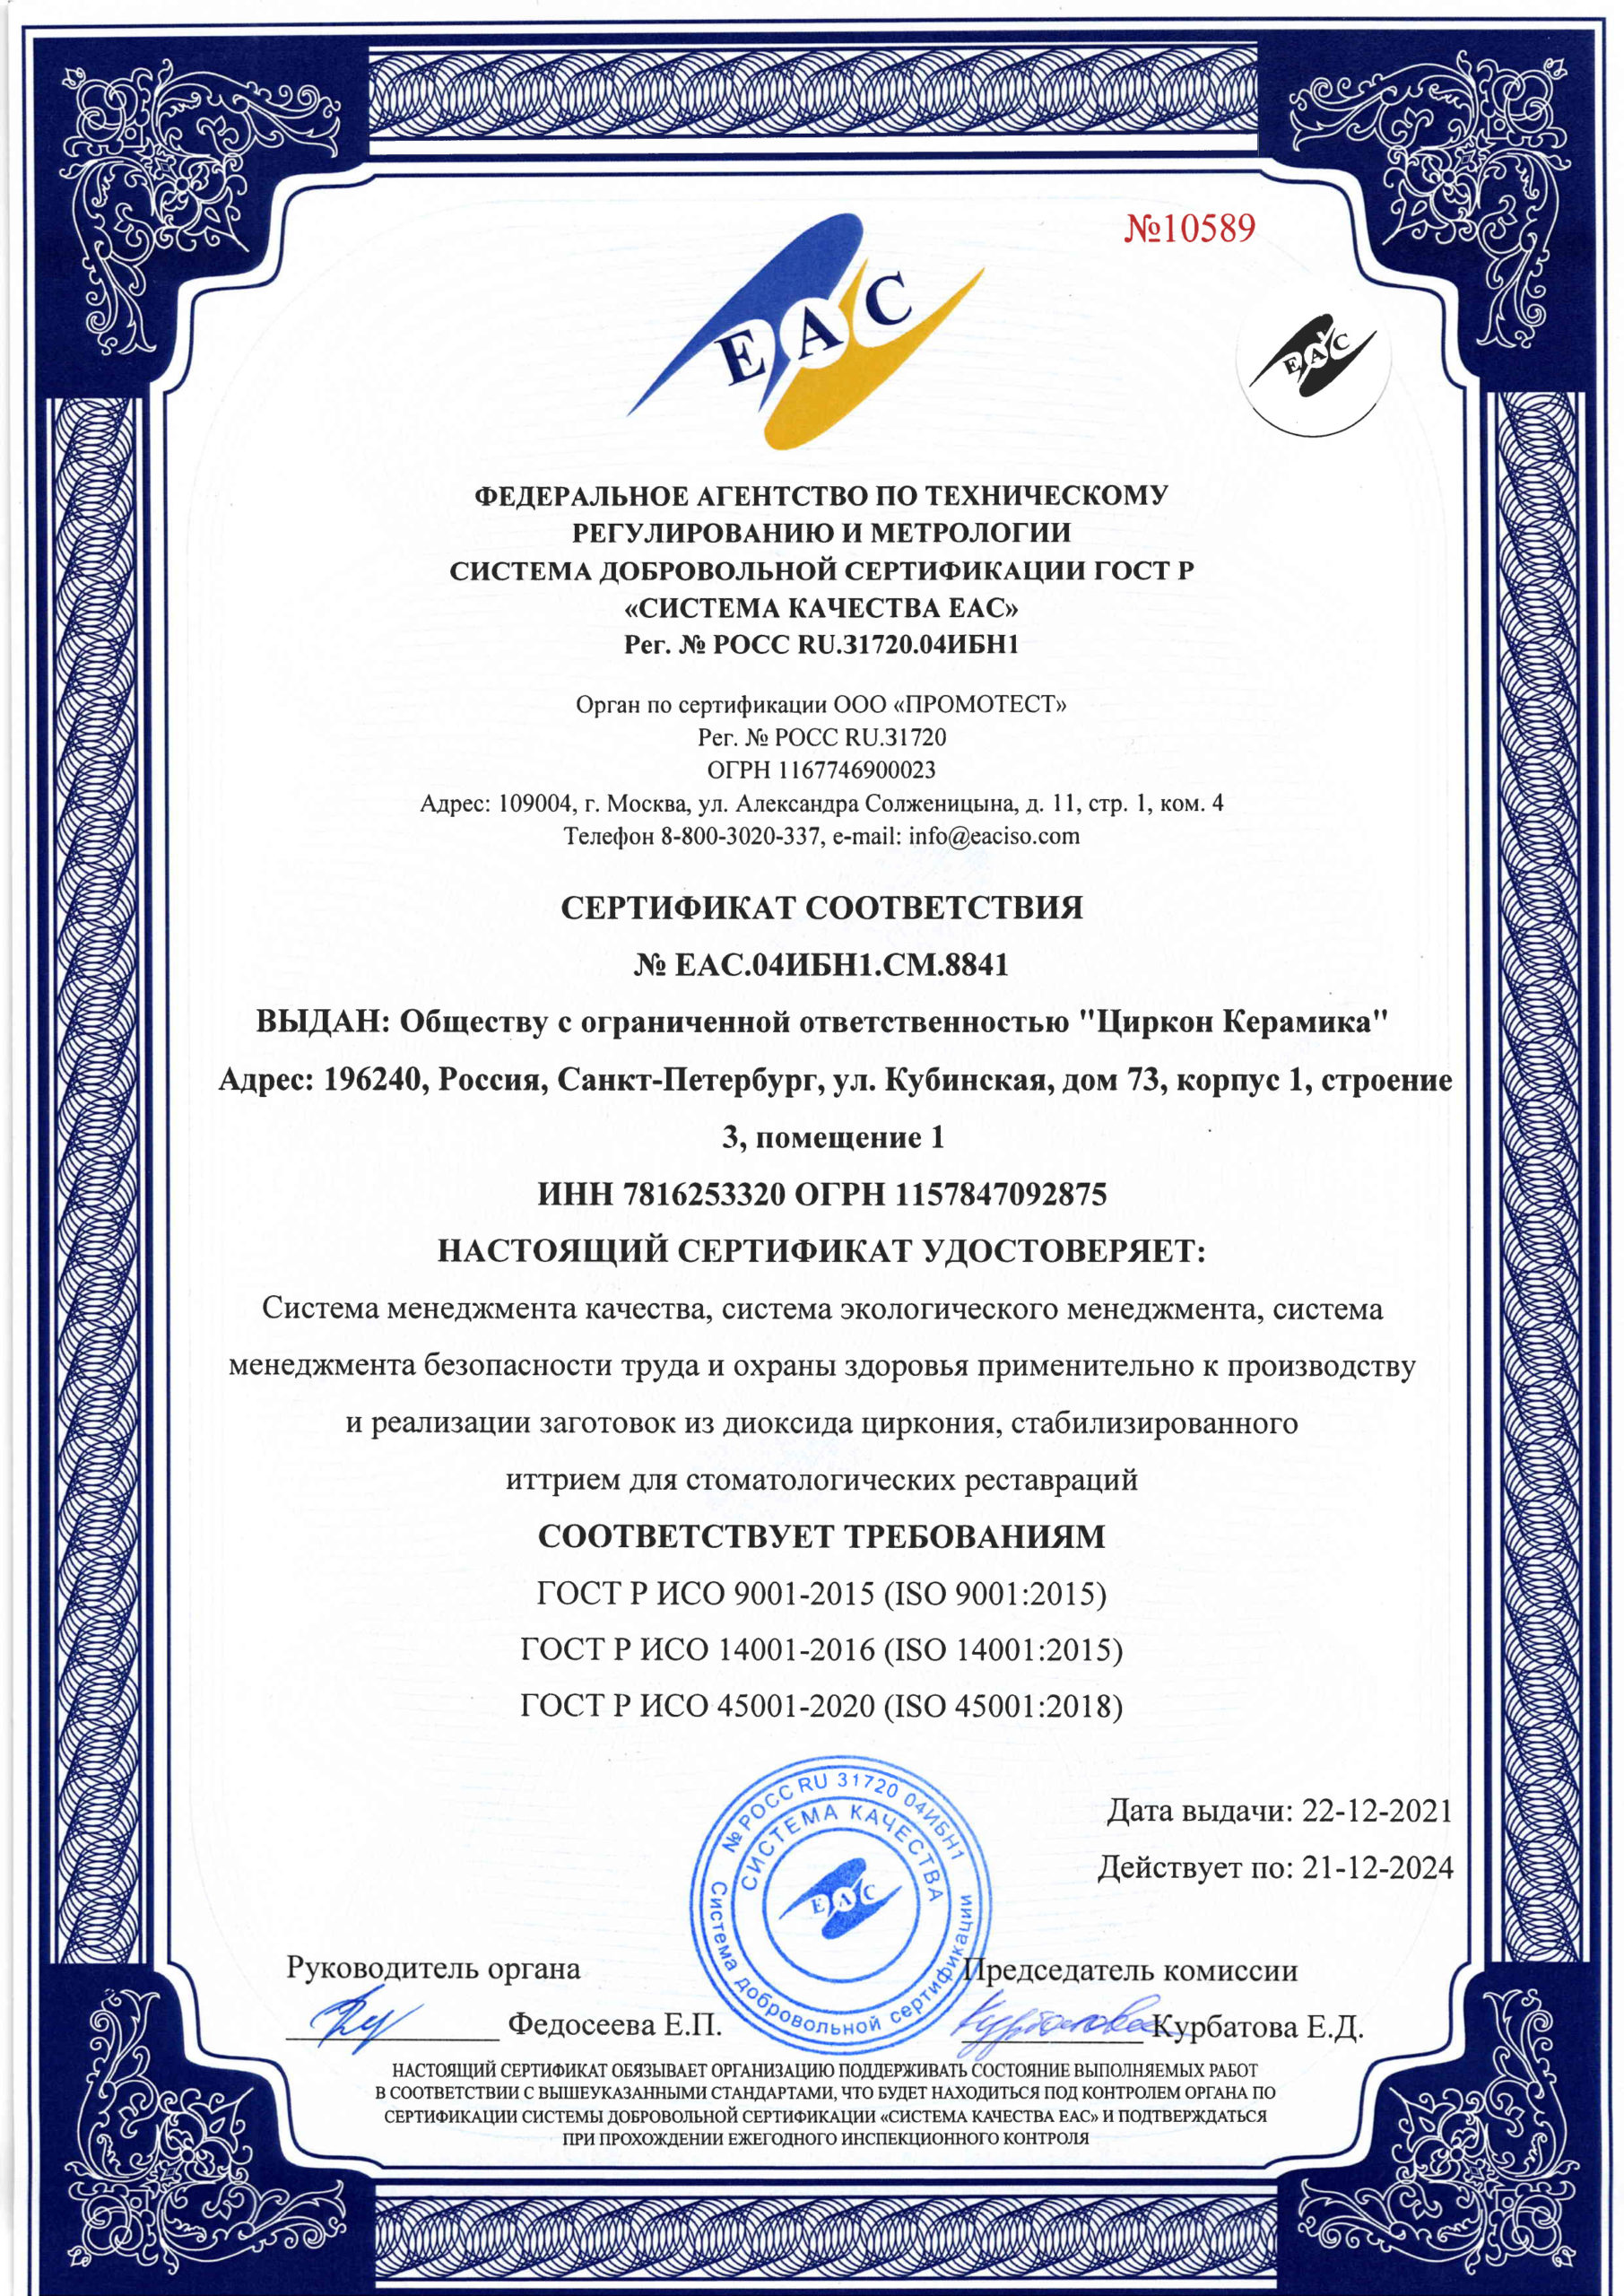 Сертификат соответствия № ЕАC.04 ИБН1.СМ.8841 картинка